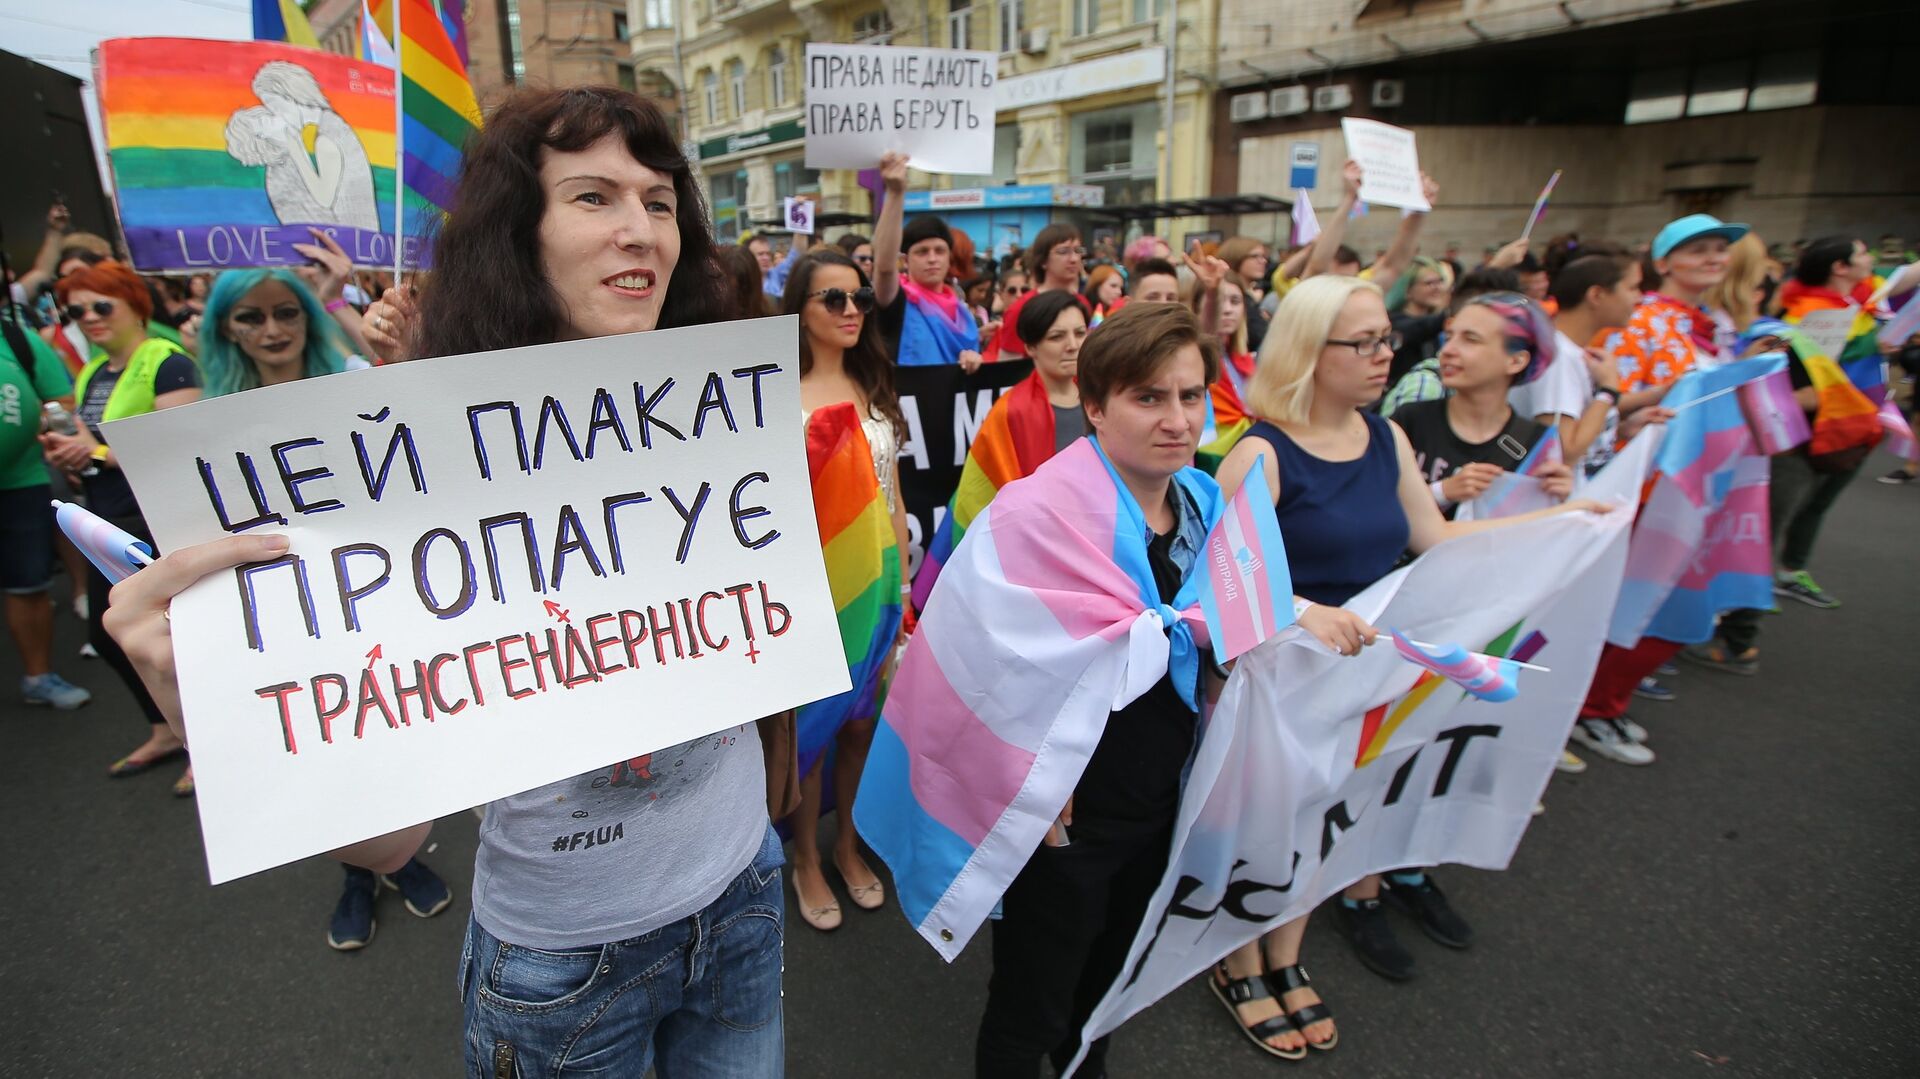 Участники Марша равенства в поддержку ЛГБТ сообщества в Киеве. 17 июня 2018 - РИА Новости, 1920, 22.05.2021